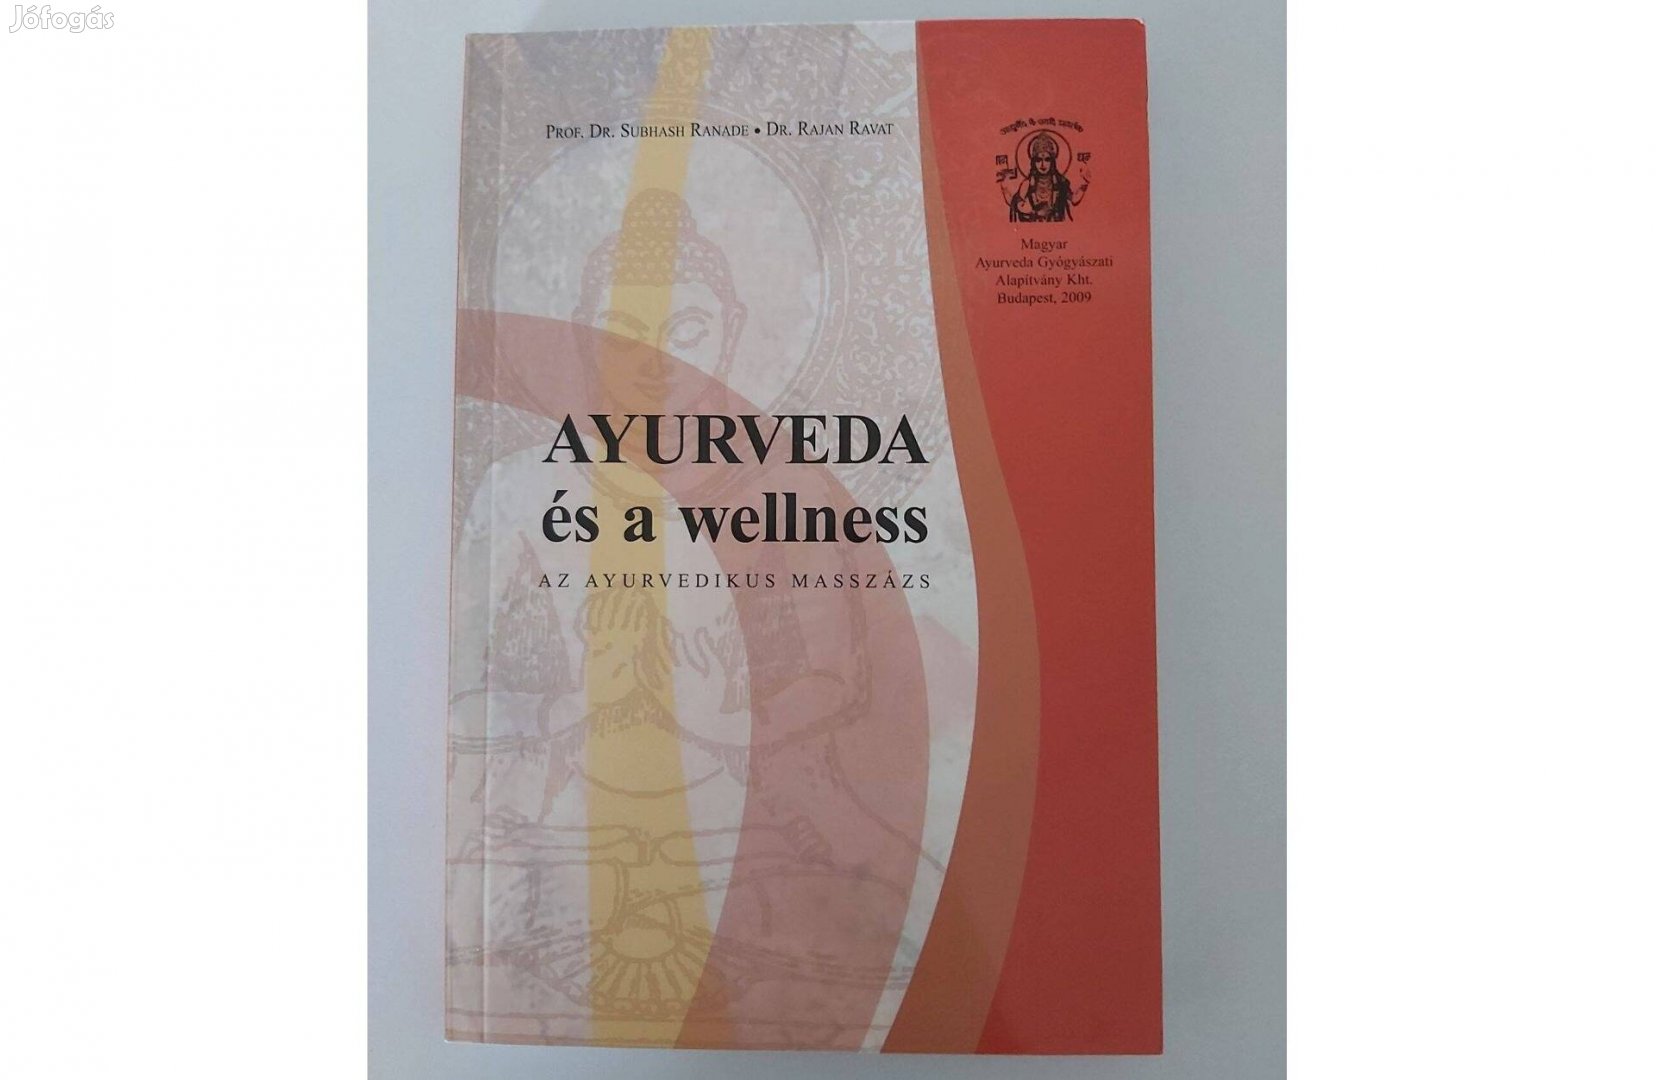 S. Ranade - R. Ravat: Ayurveda és a wellness (Az ayurvedikus masszázs)